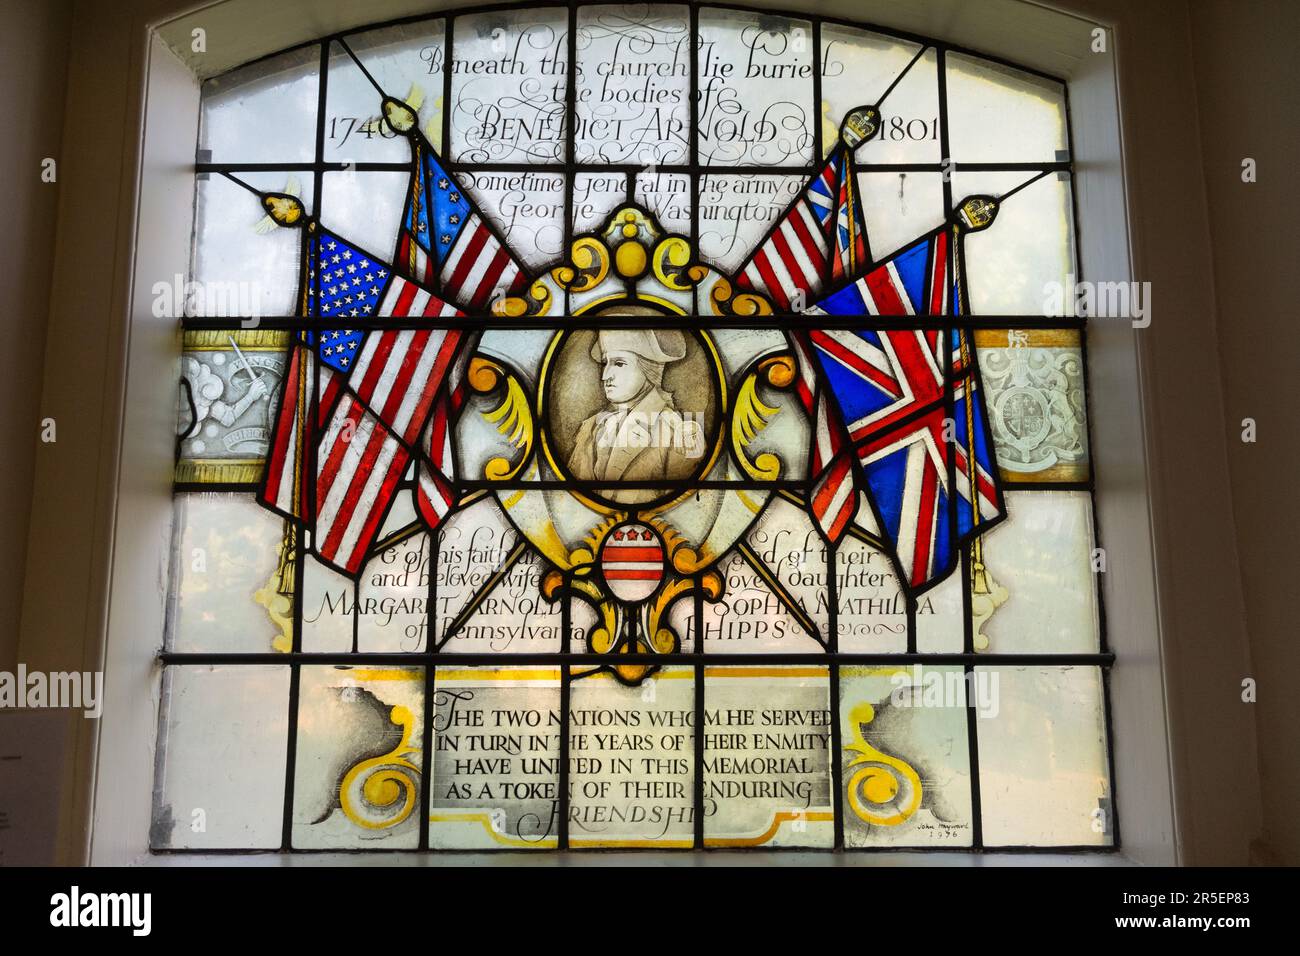 Vitraux à la mémoire de Benoît Arnold, un patriote américain, à l'église St Mary's Church, Battersea, Londres, Angleterre, Royaume-Uni Banque D'Images